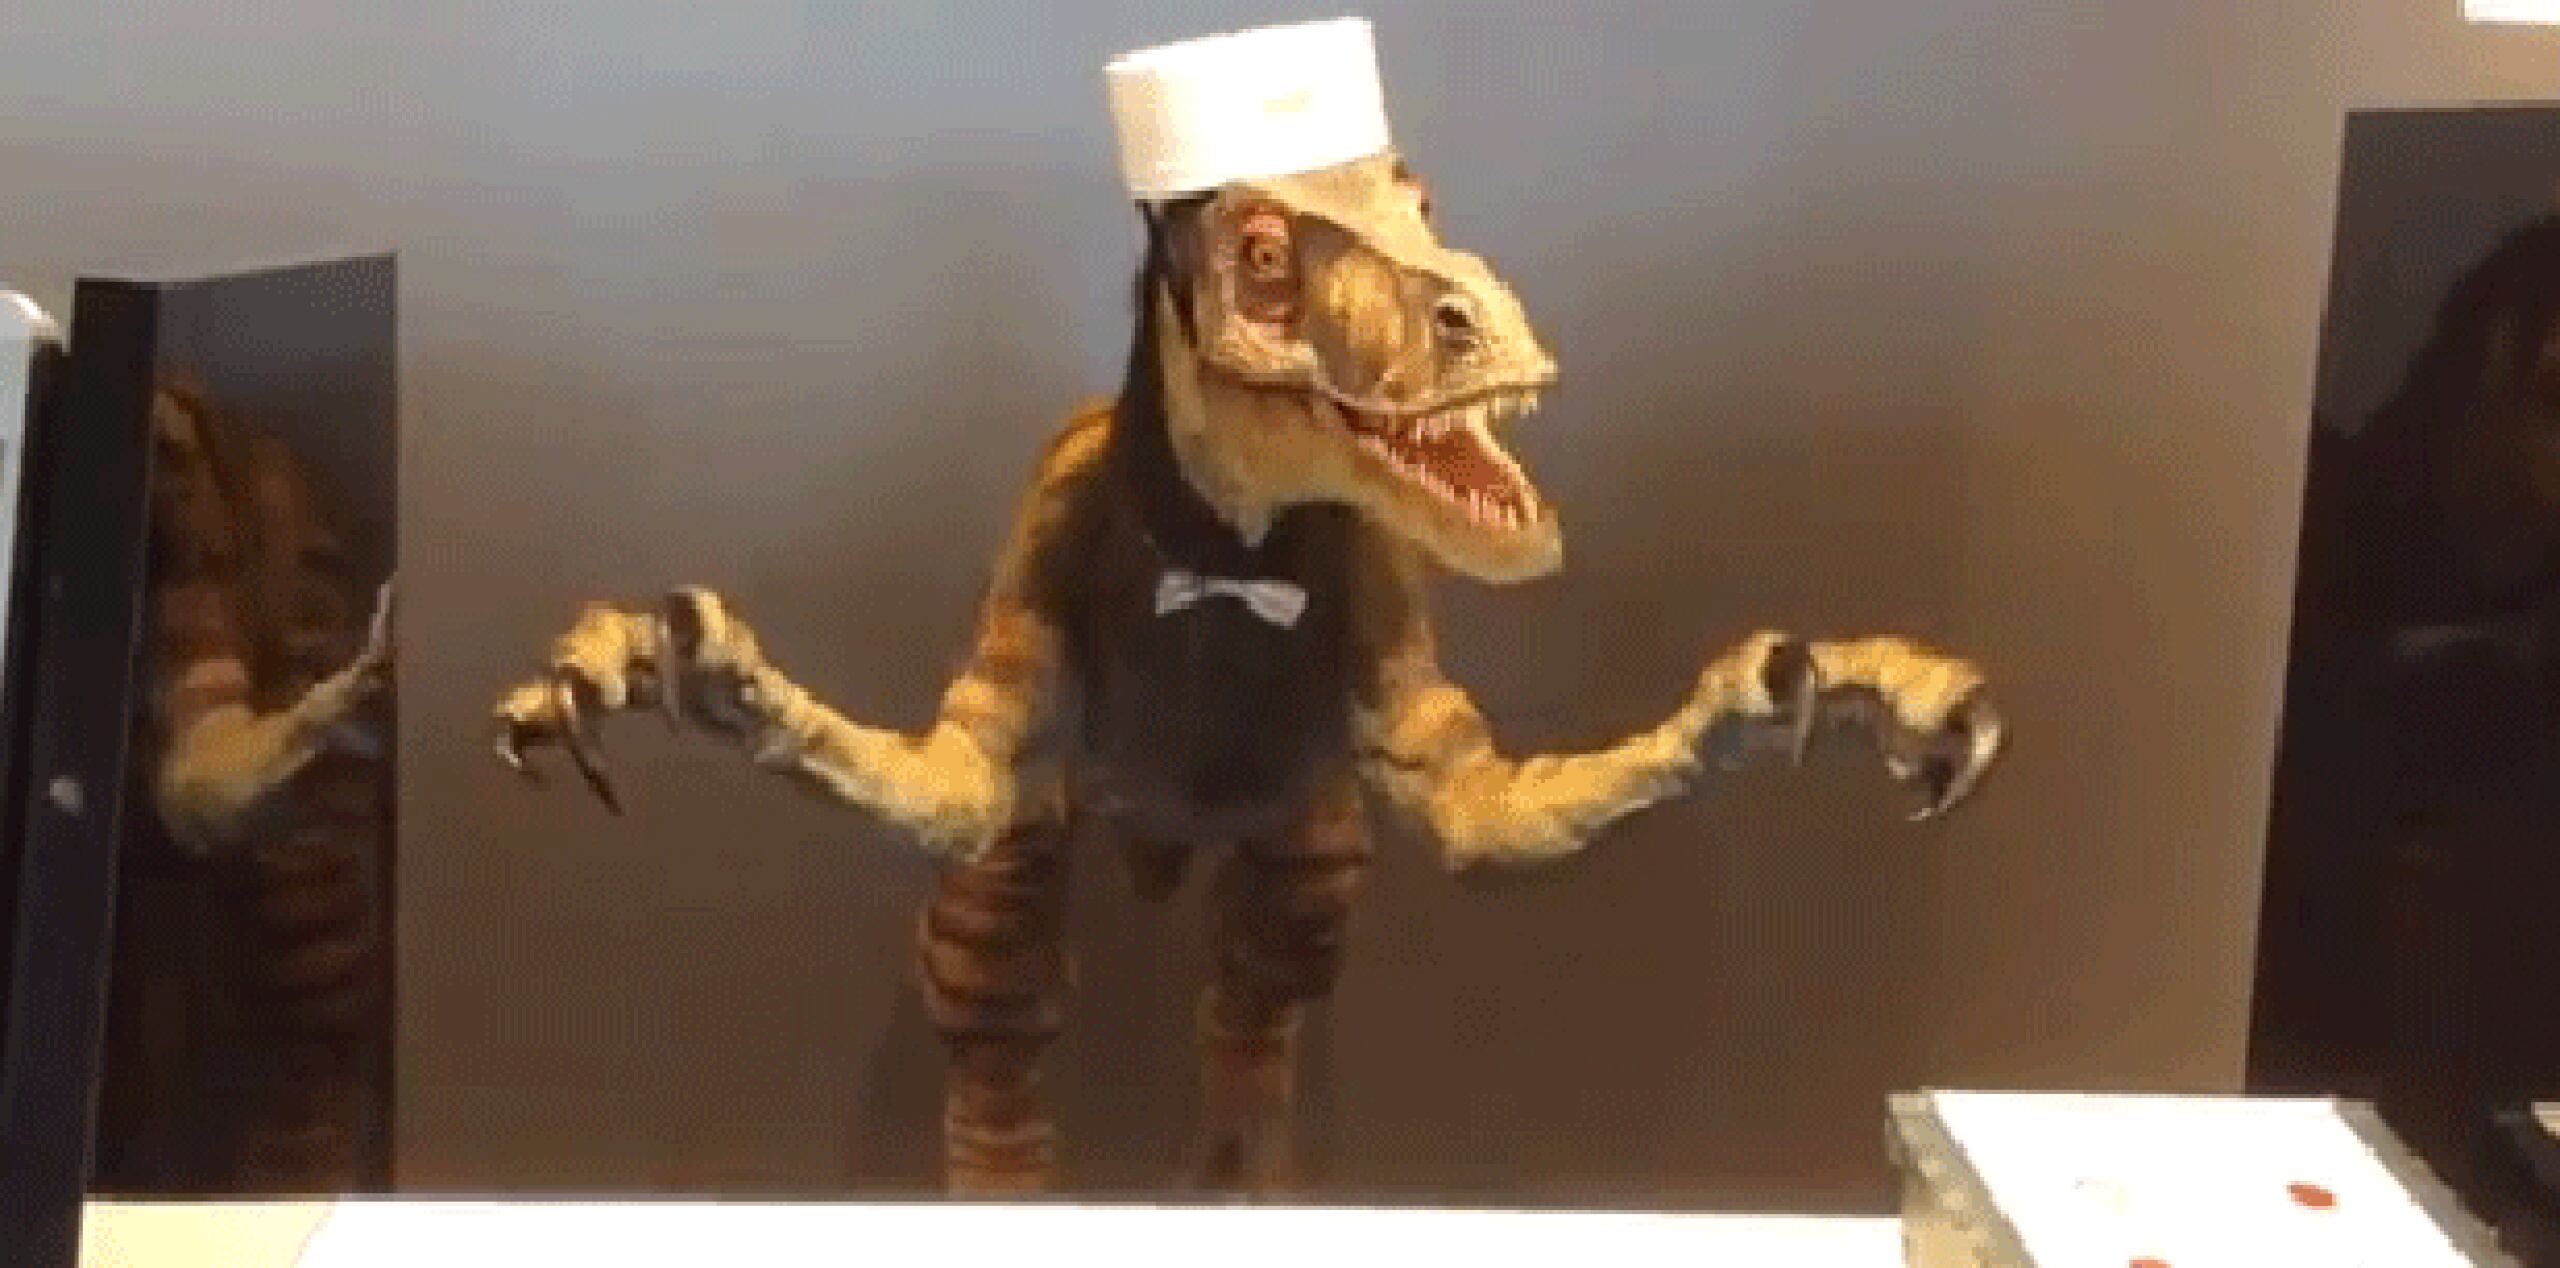 El robot recepcionista que habla inglés tiene la apariencia de un dinosaurio y el que habla japonés semeja una humanoide con pestañas. (YouTube)